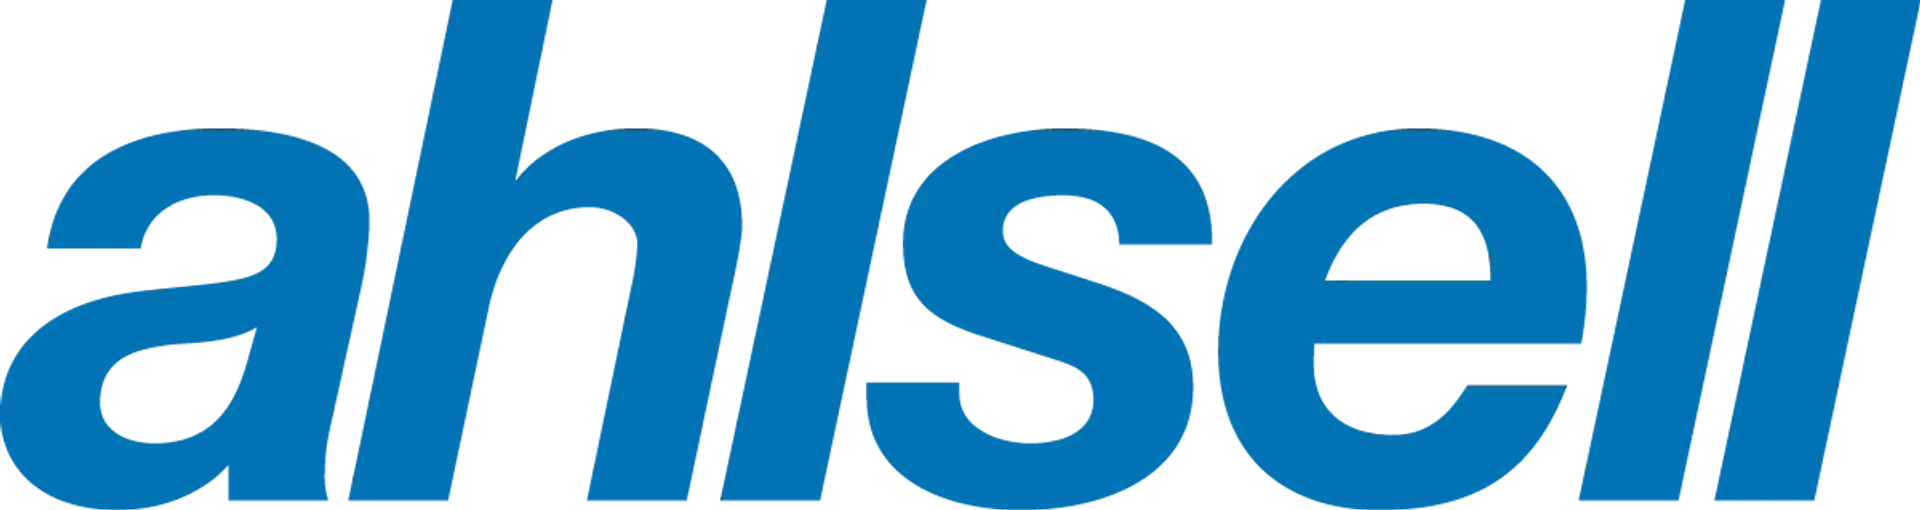 AHLSELL logo